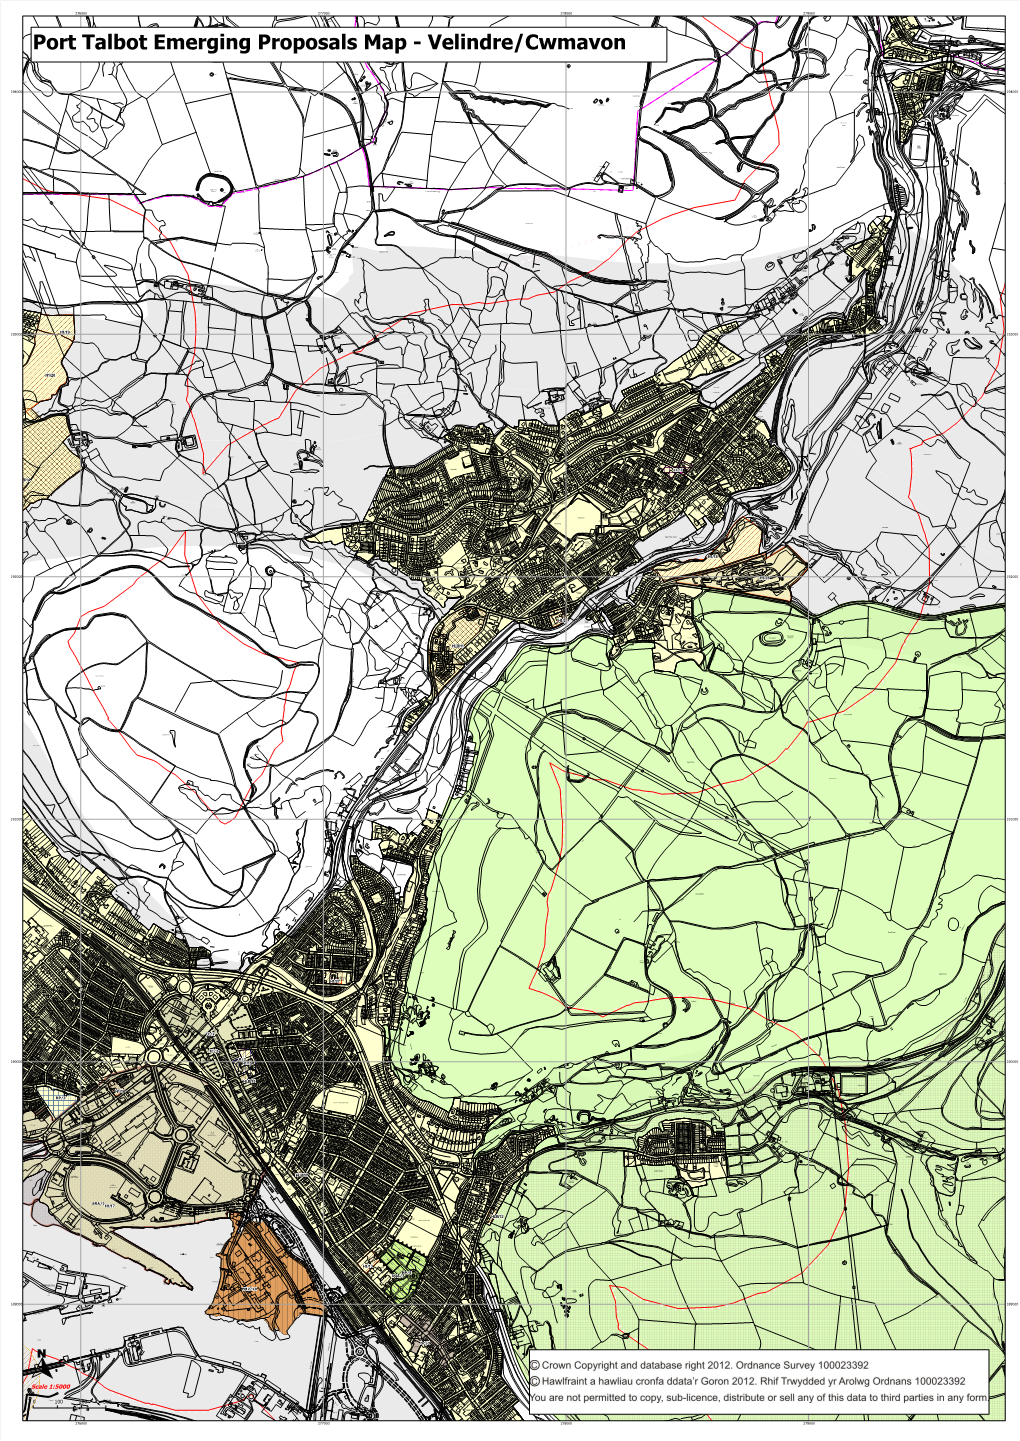 Port Talbot Emerging Proposals Map - Velindre/Cwmavon 2